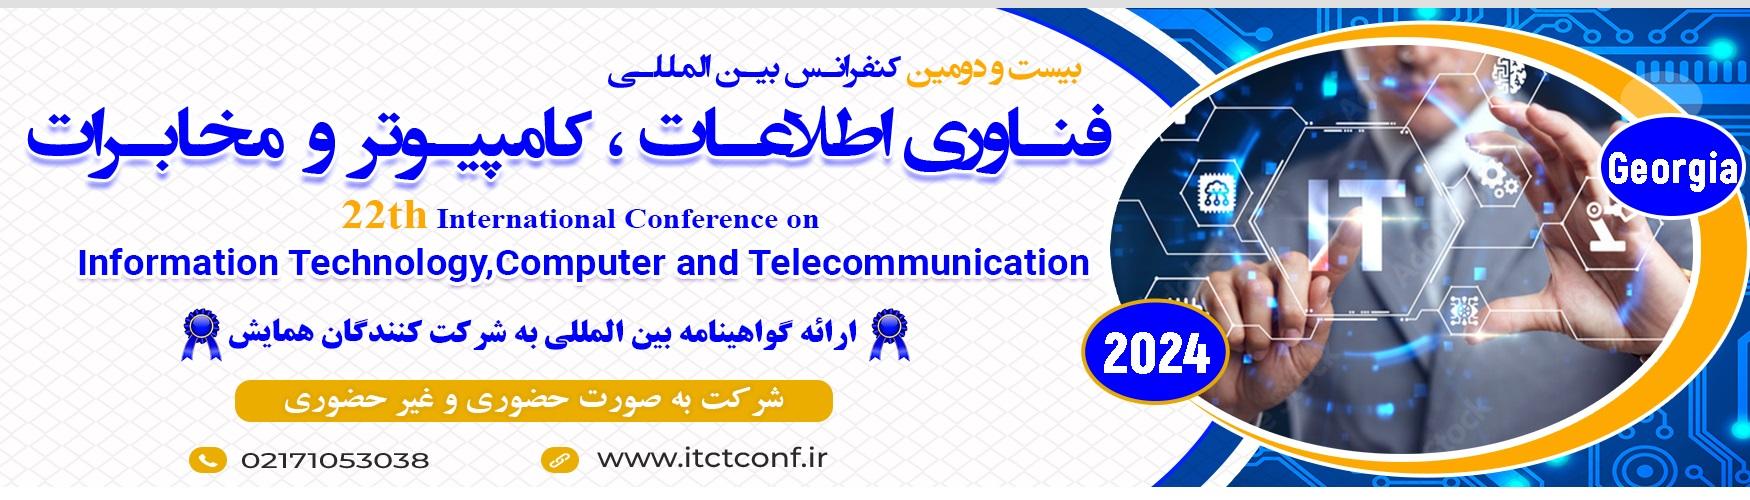 بیستمین کنفرانس بین المللی فناوری اطلاعات ، کامپیوتر و مخابرات